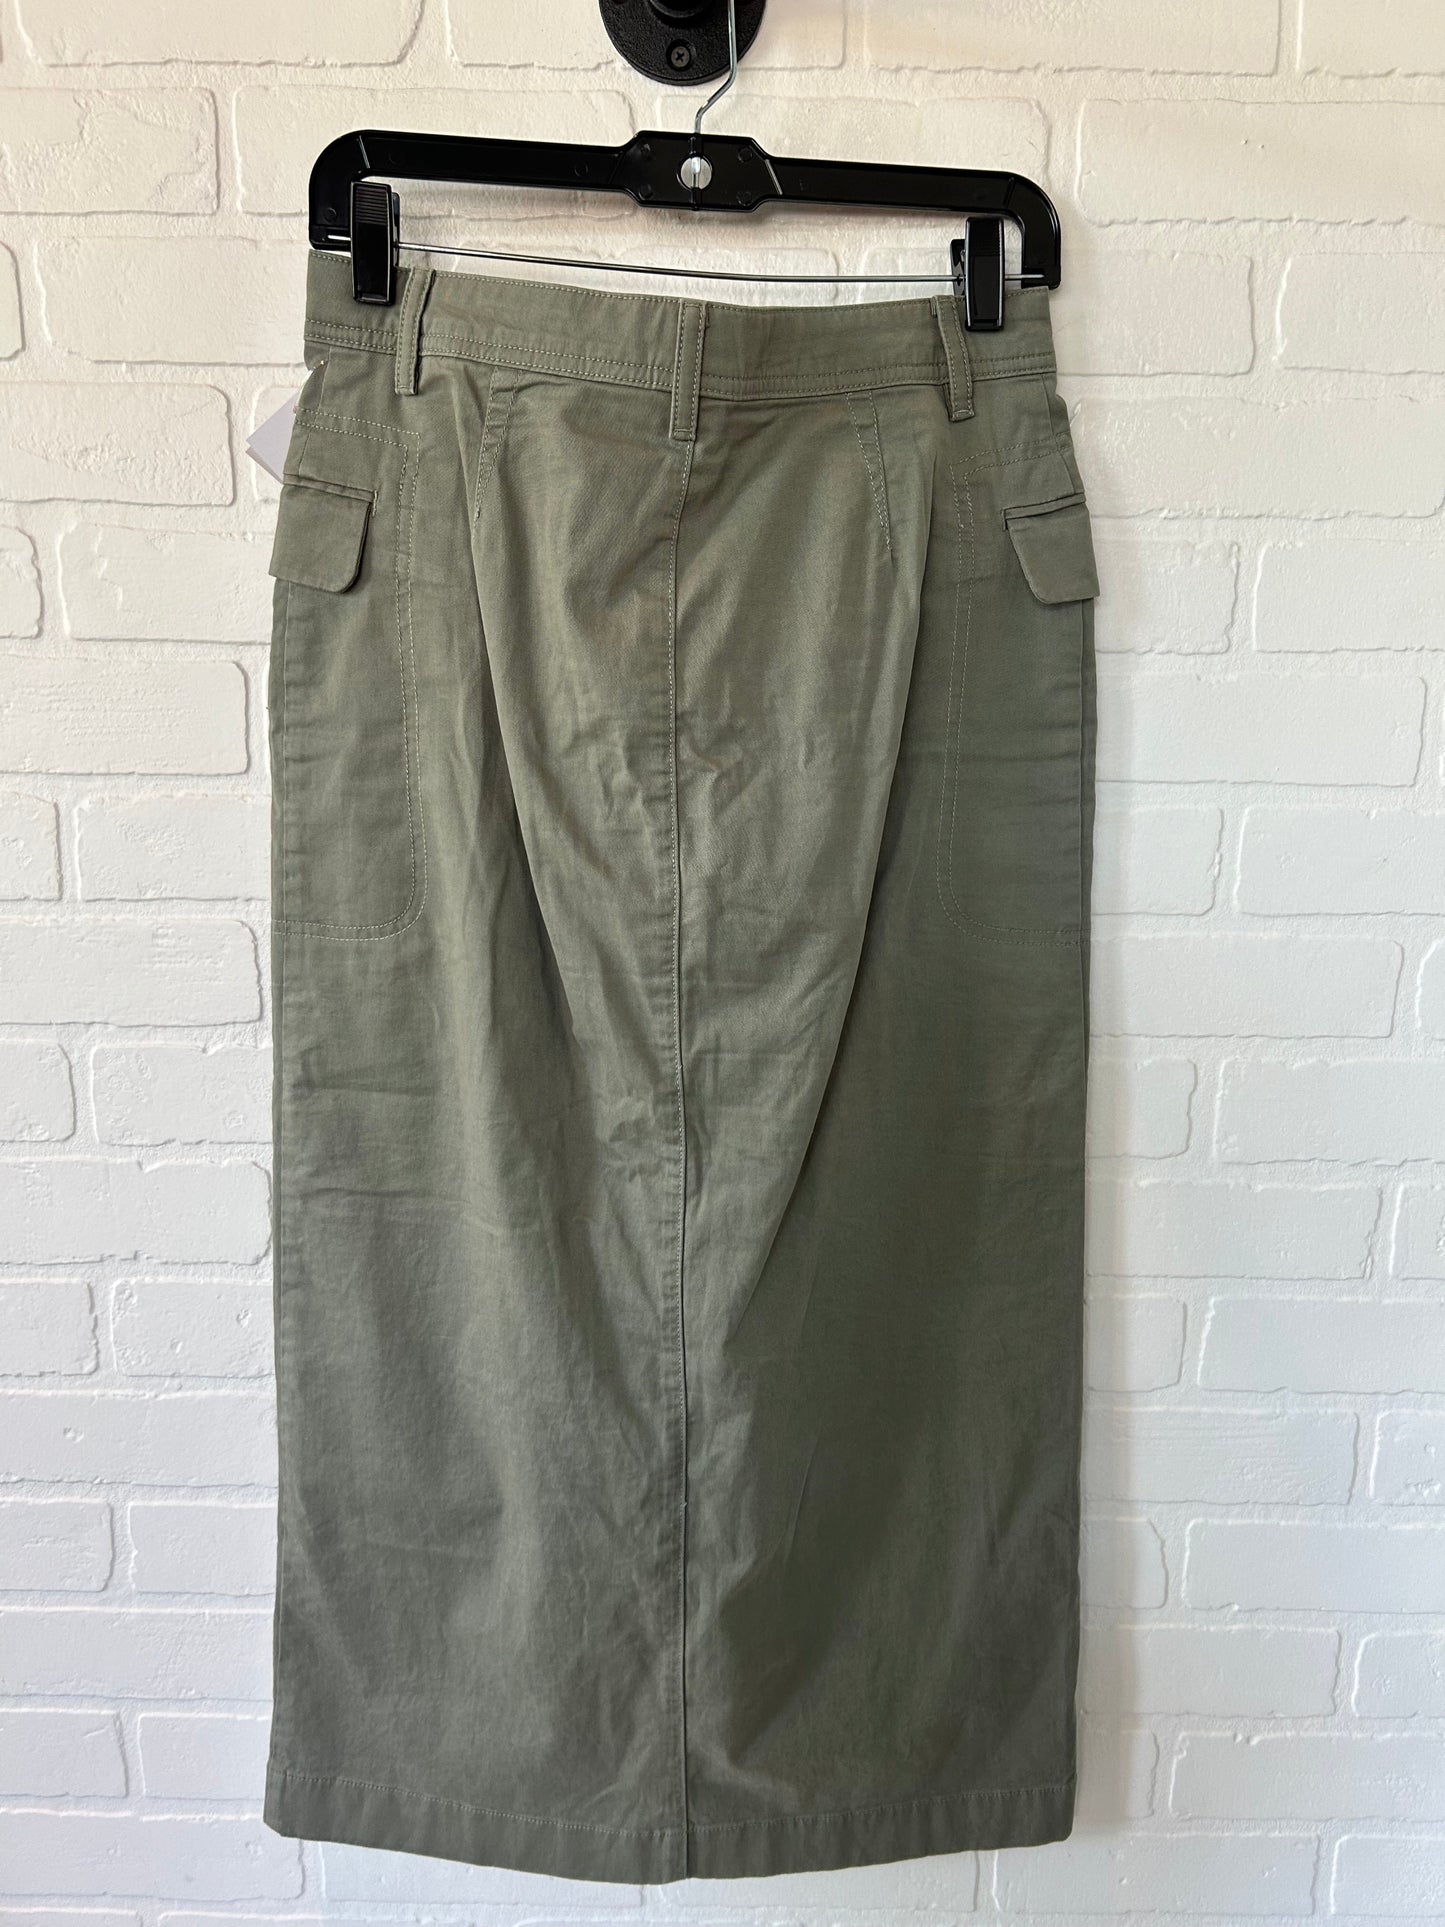 Green Skirt Maxi Gap, Size 4